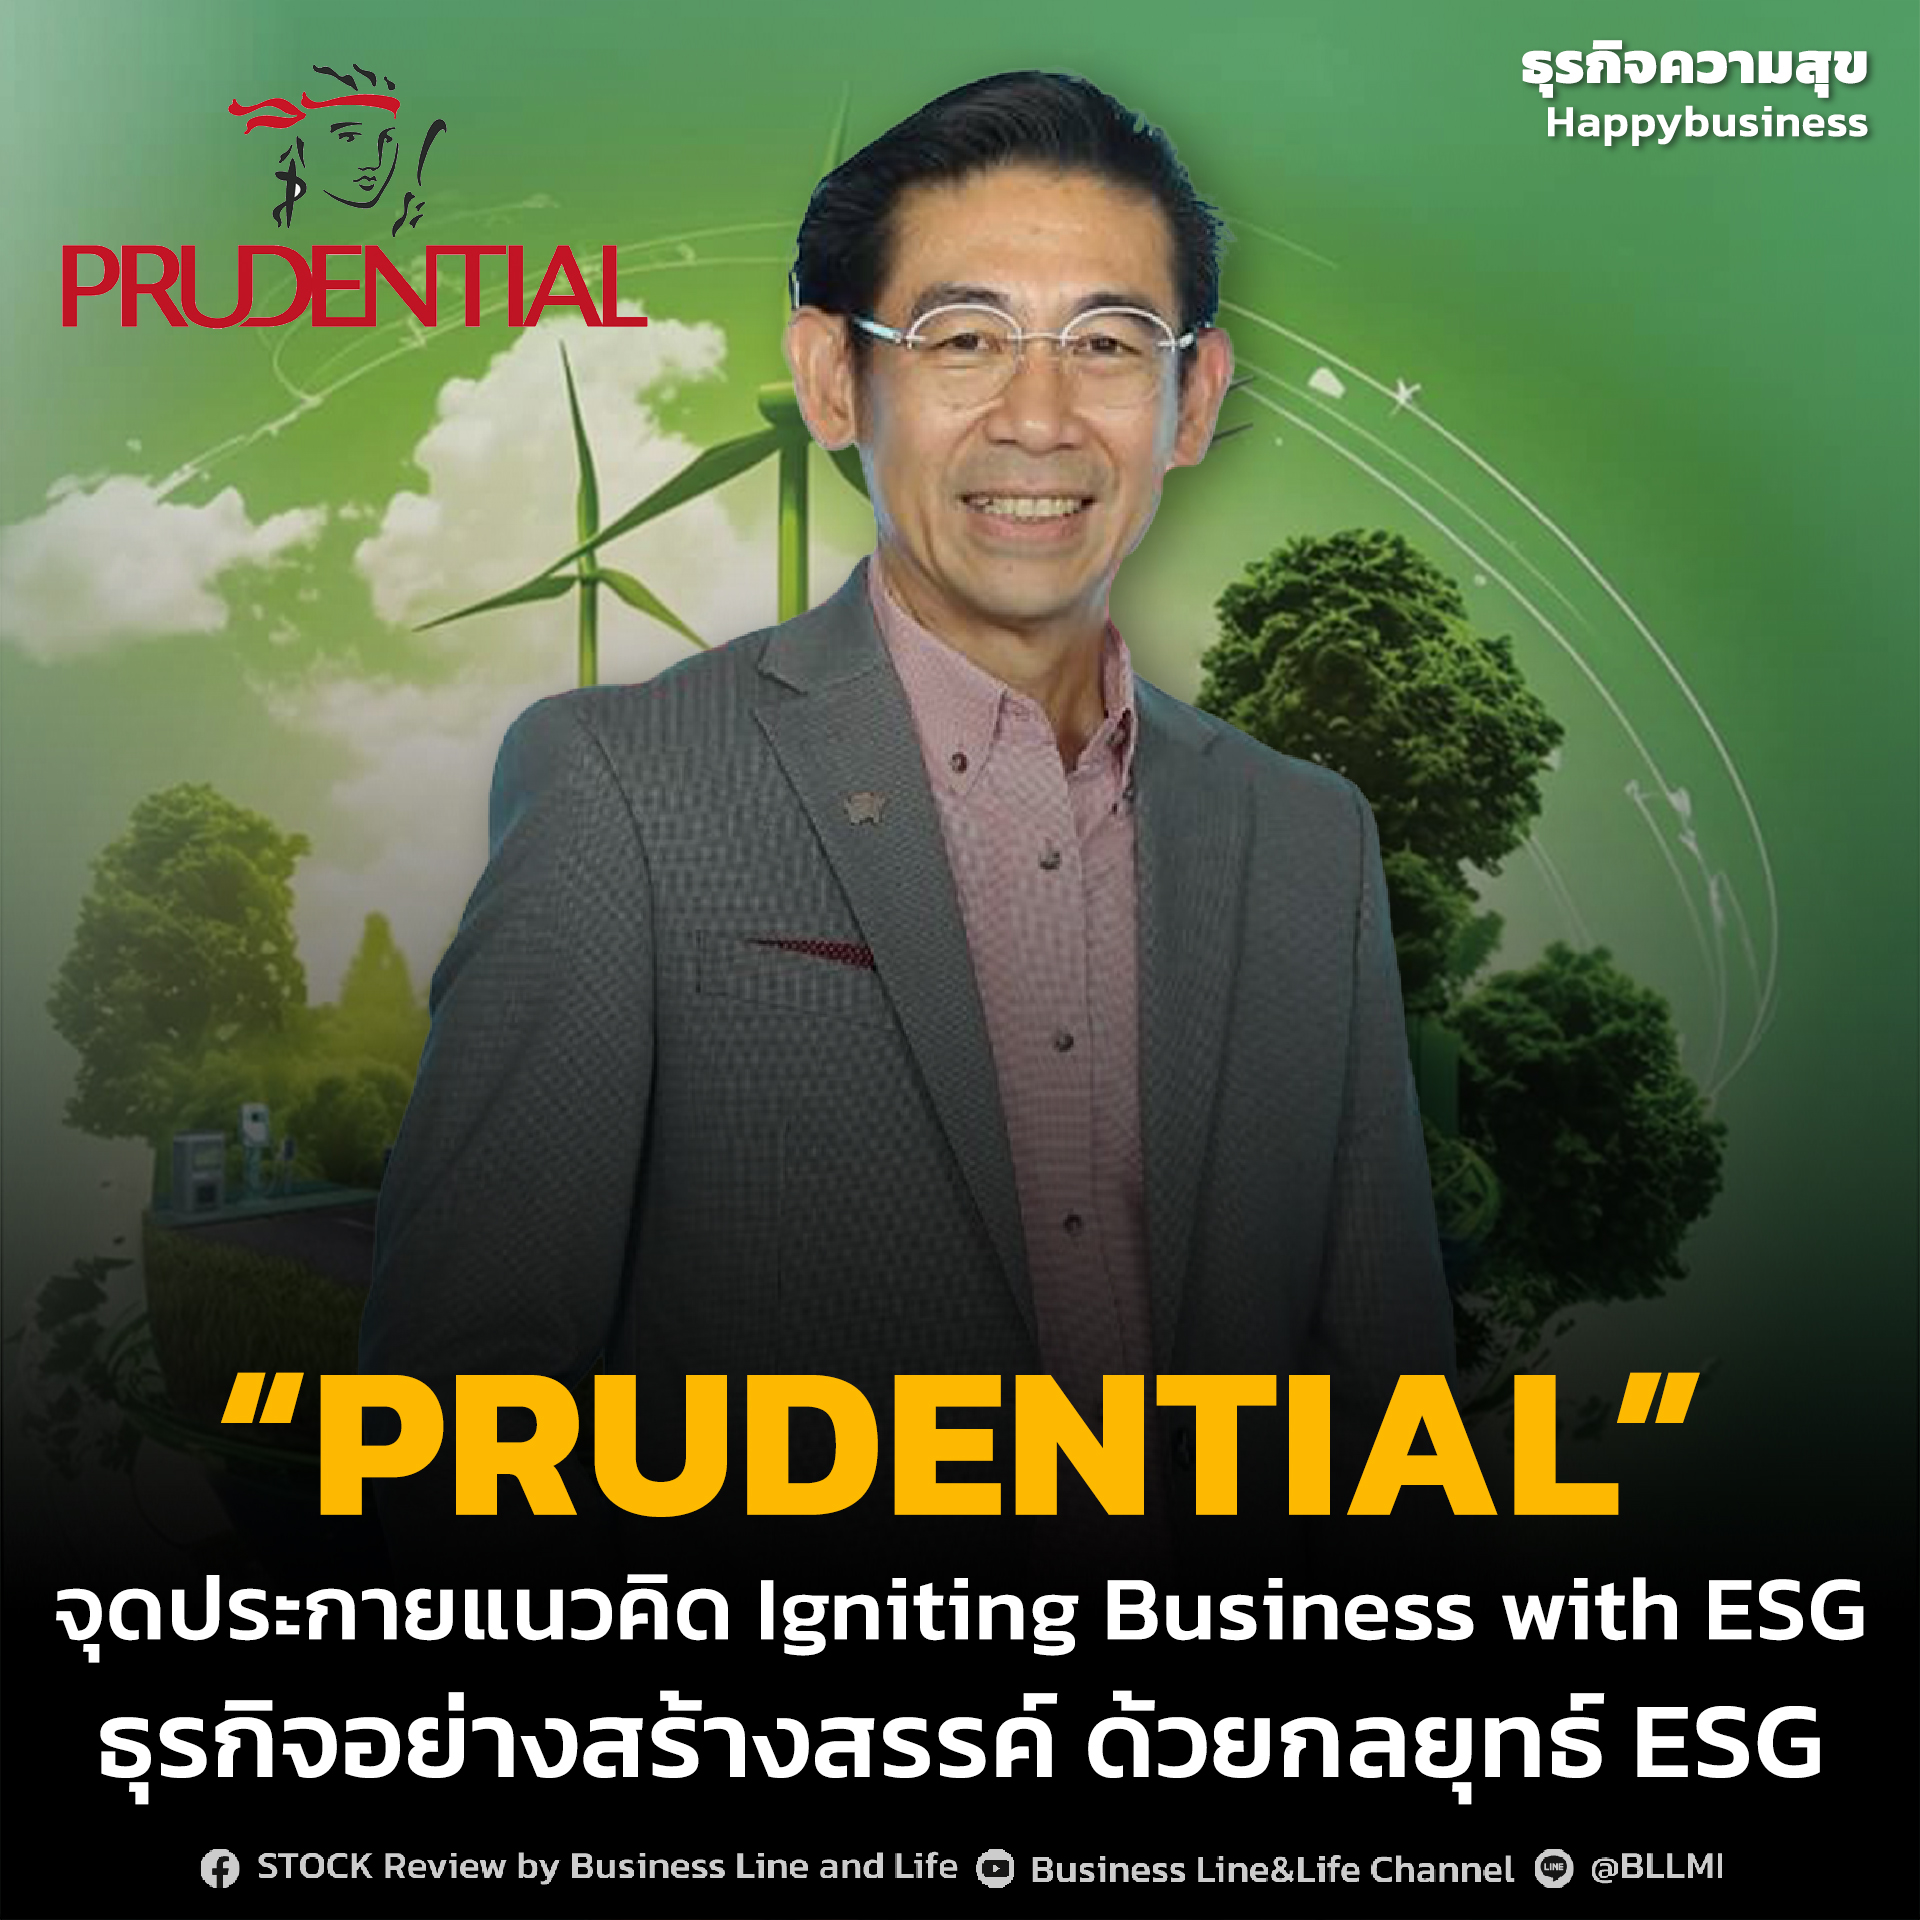 พรูเด็นเชียล ประเทศไทย จุดประกายแนวคิด Igniting Business with ESG